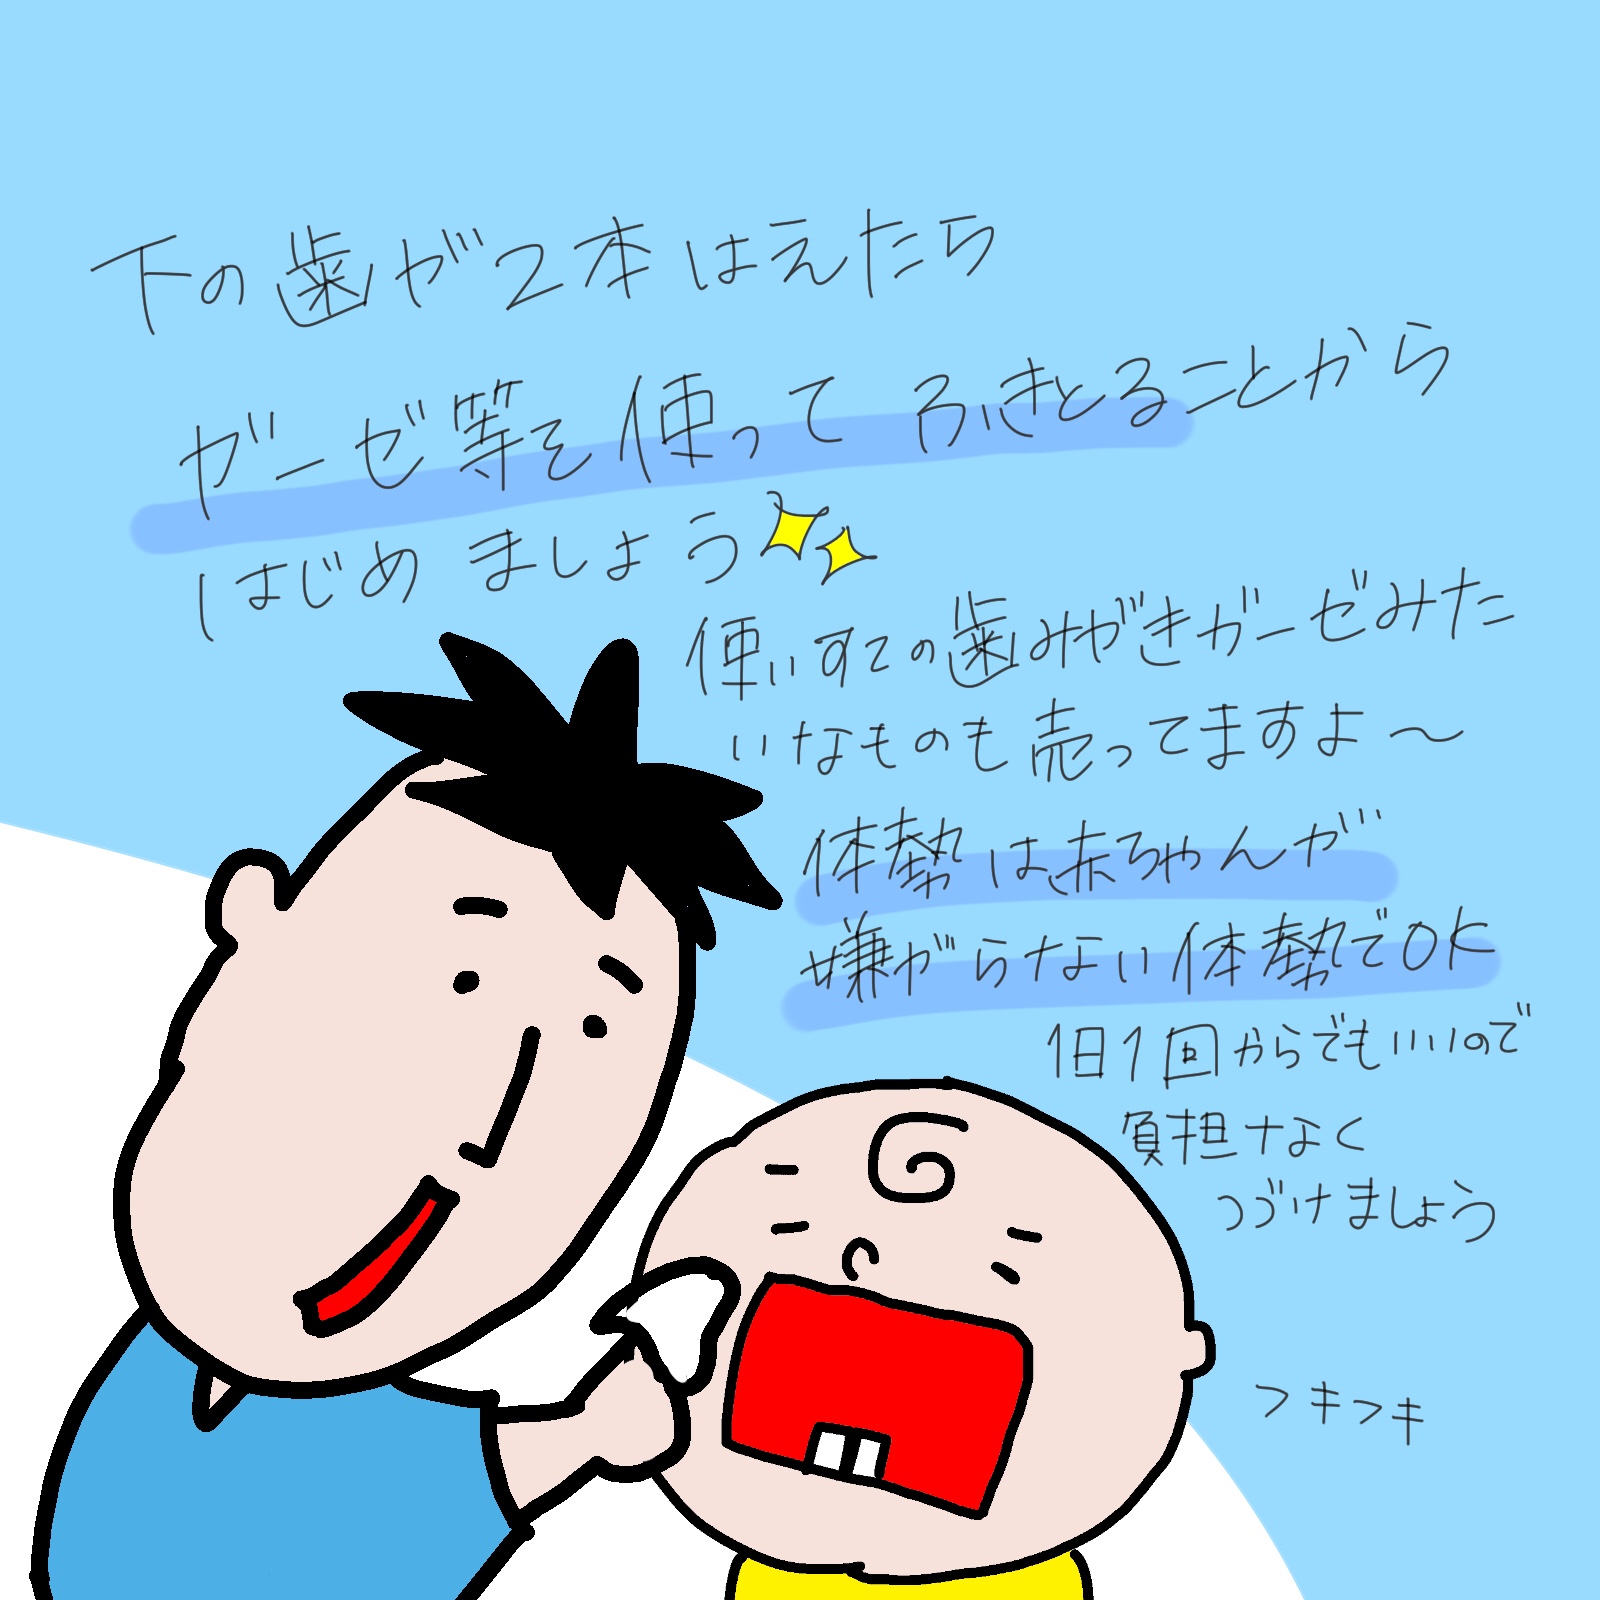 歯みがきを赤ちゃんに始めさせる時期とは Makosodate 保健師による子育て応援ブログ